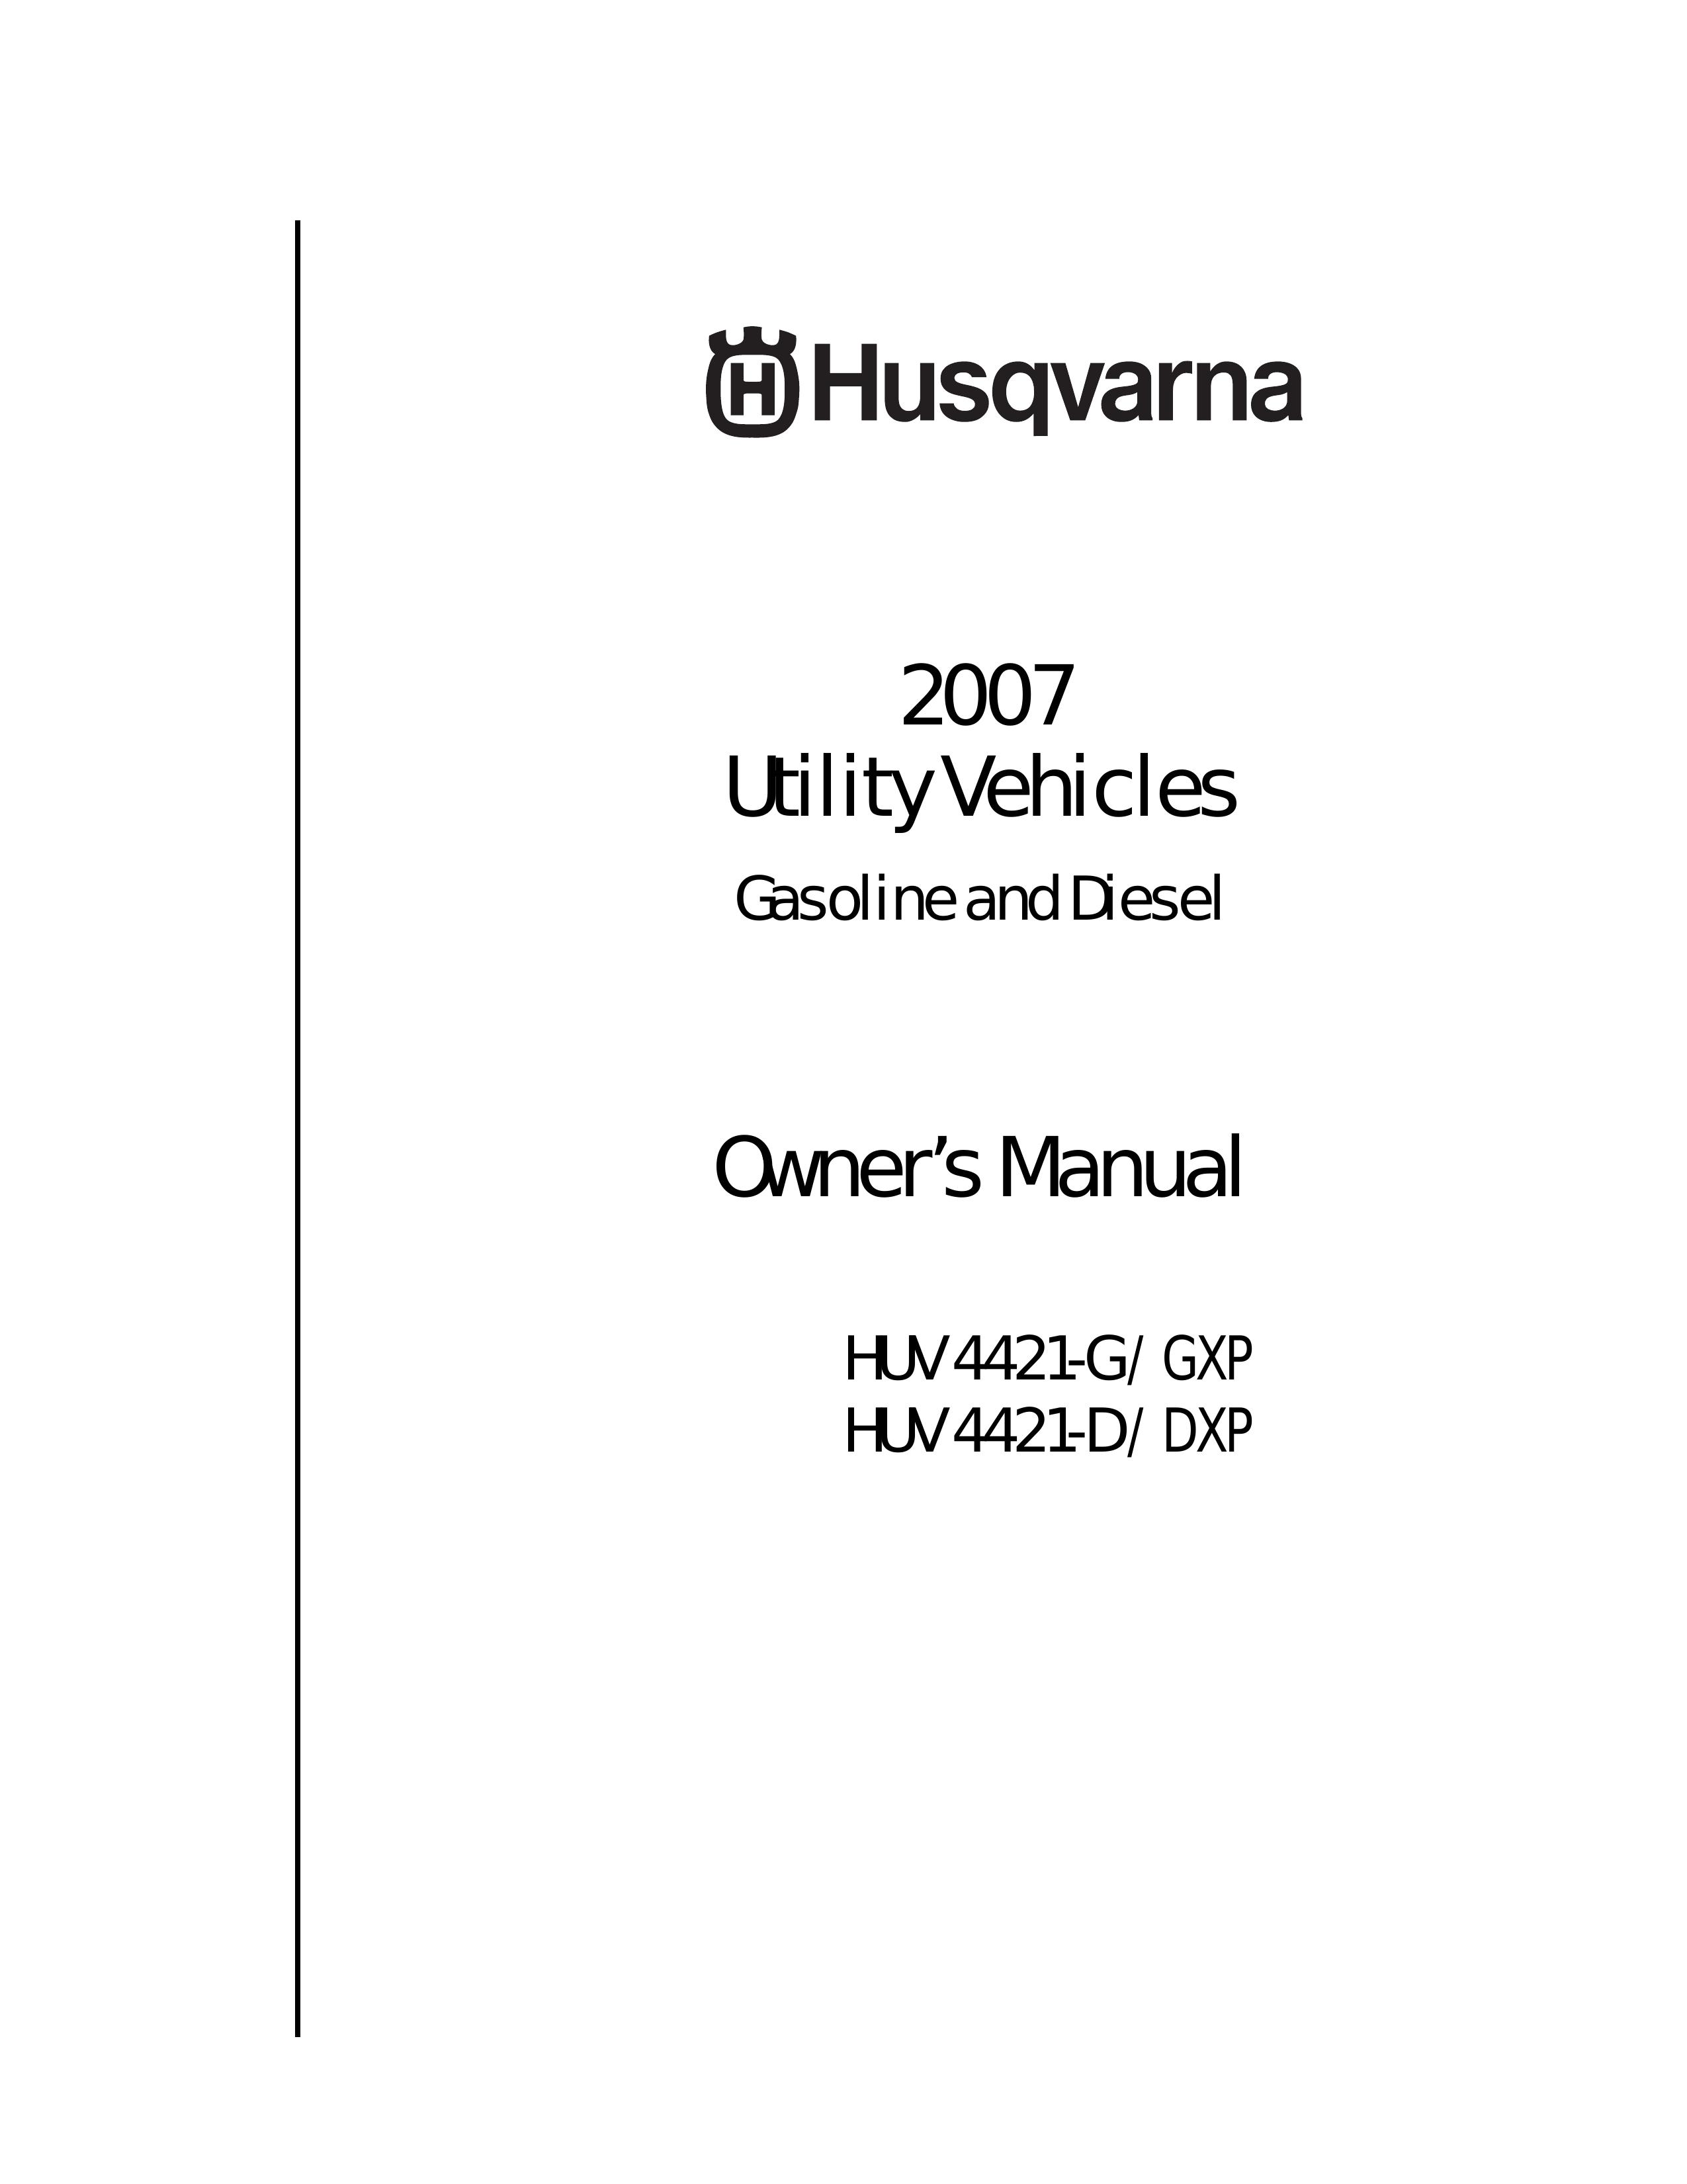 Husqvarna HUV 4421-D / DXP Utility Vehicle User Manual